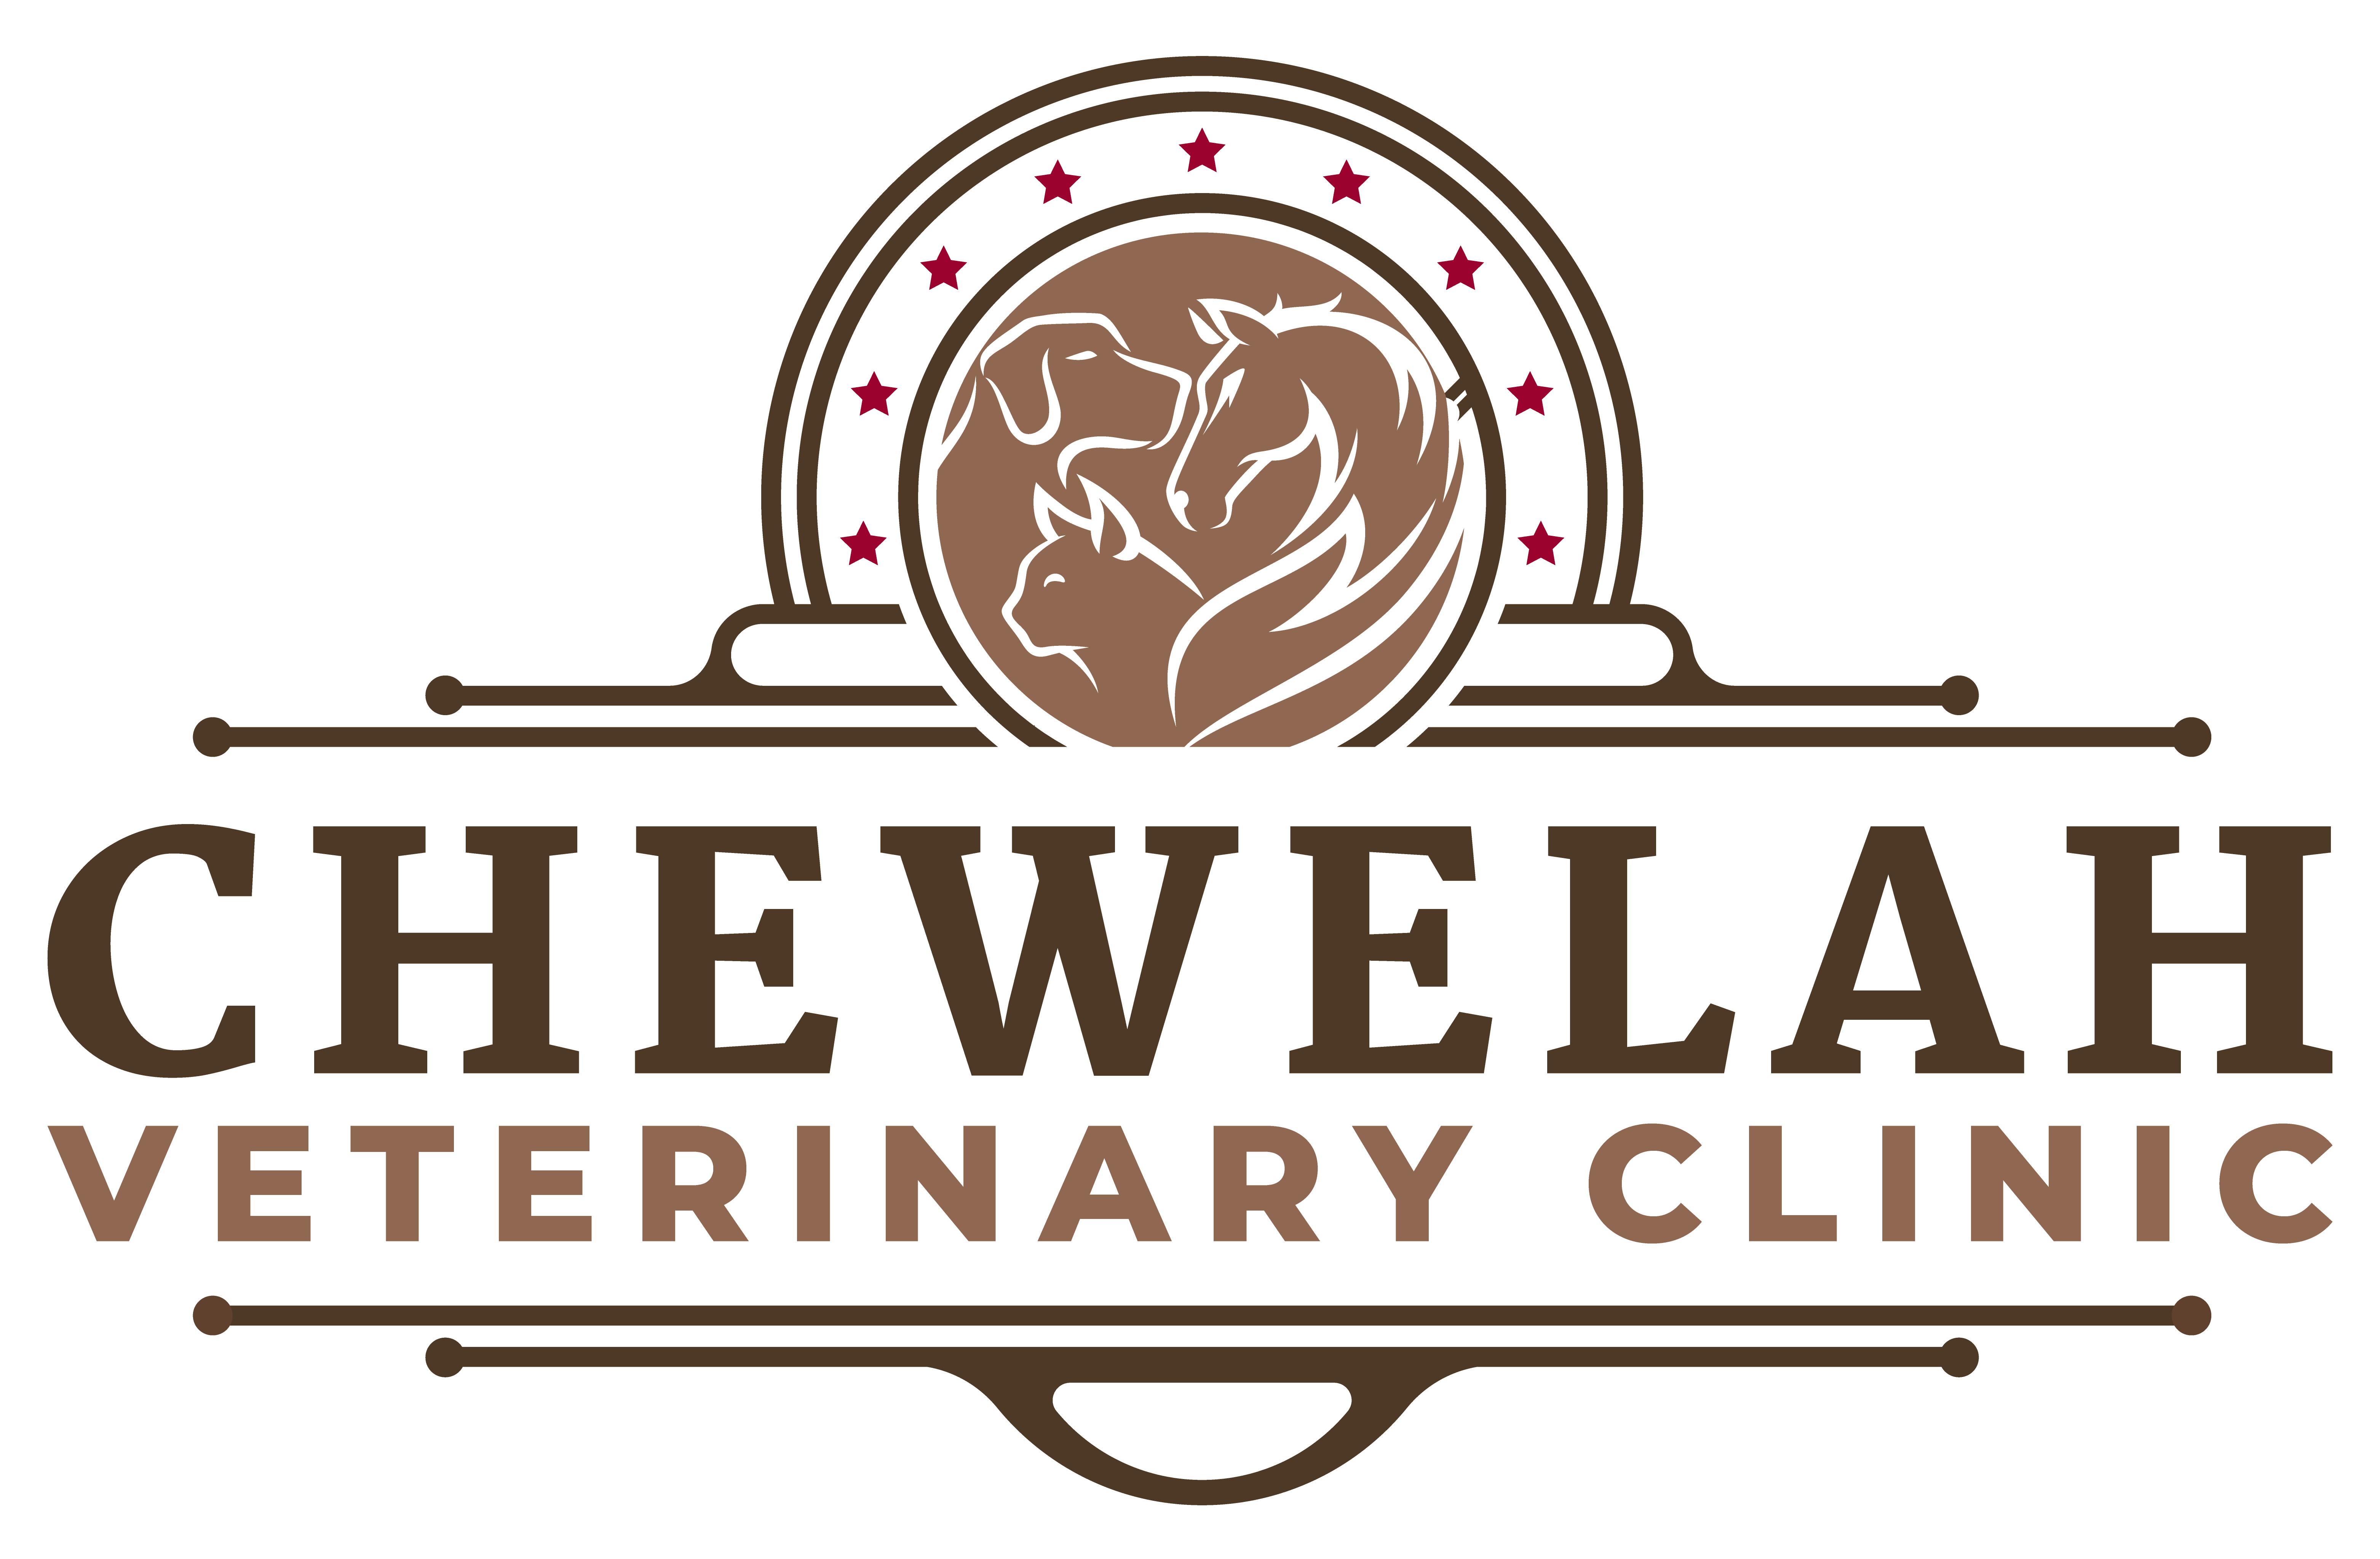 Chewelah Veterinary Clinic